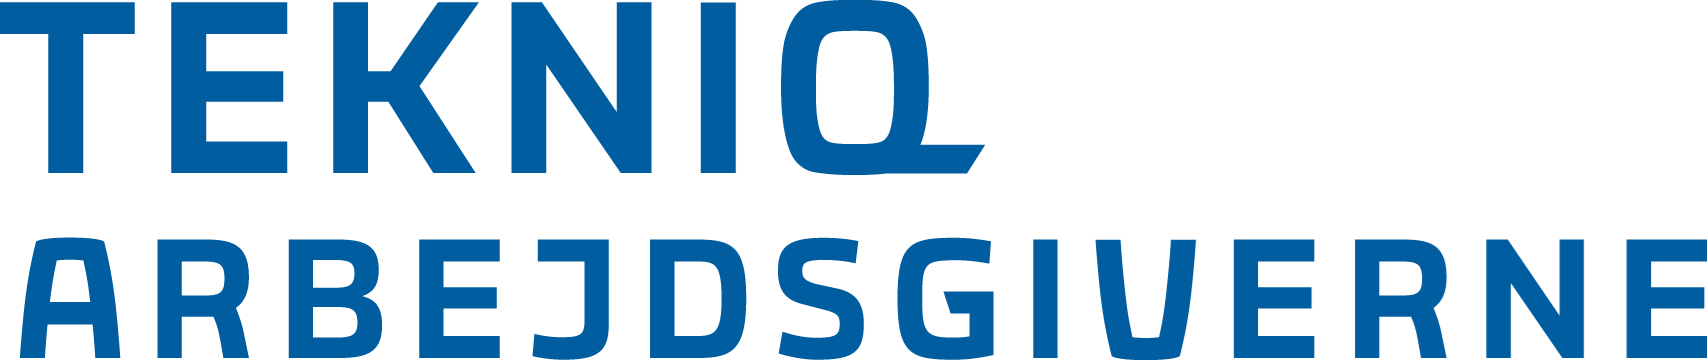 tekniq_logo